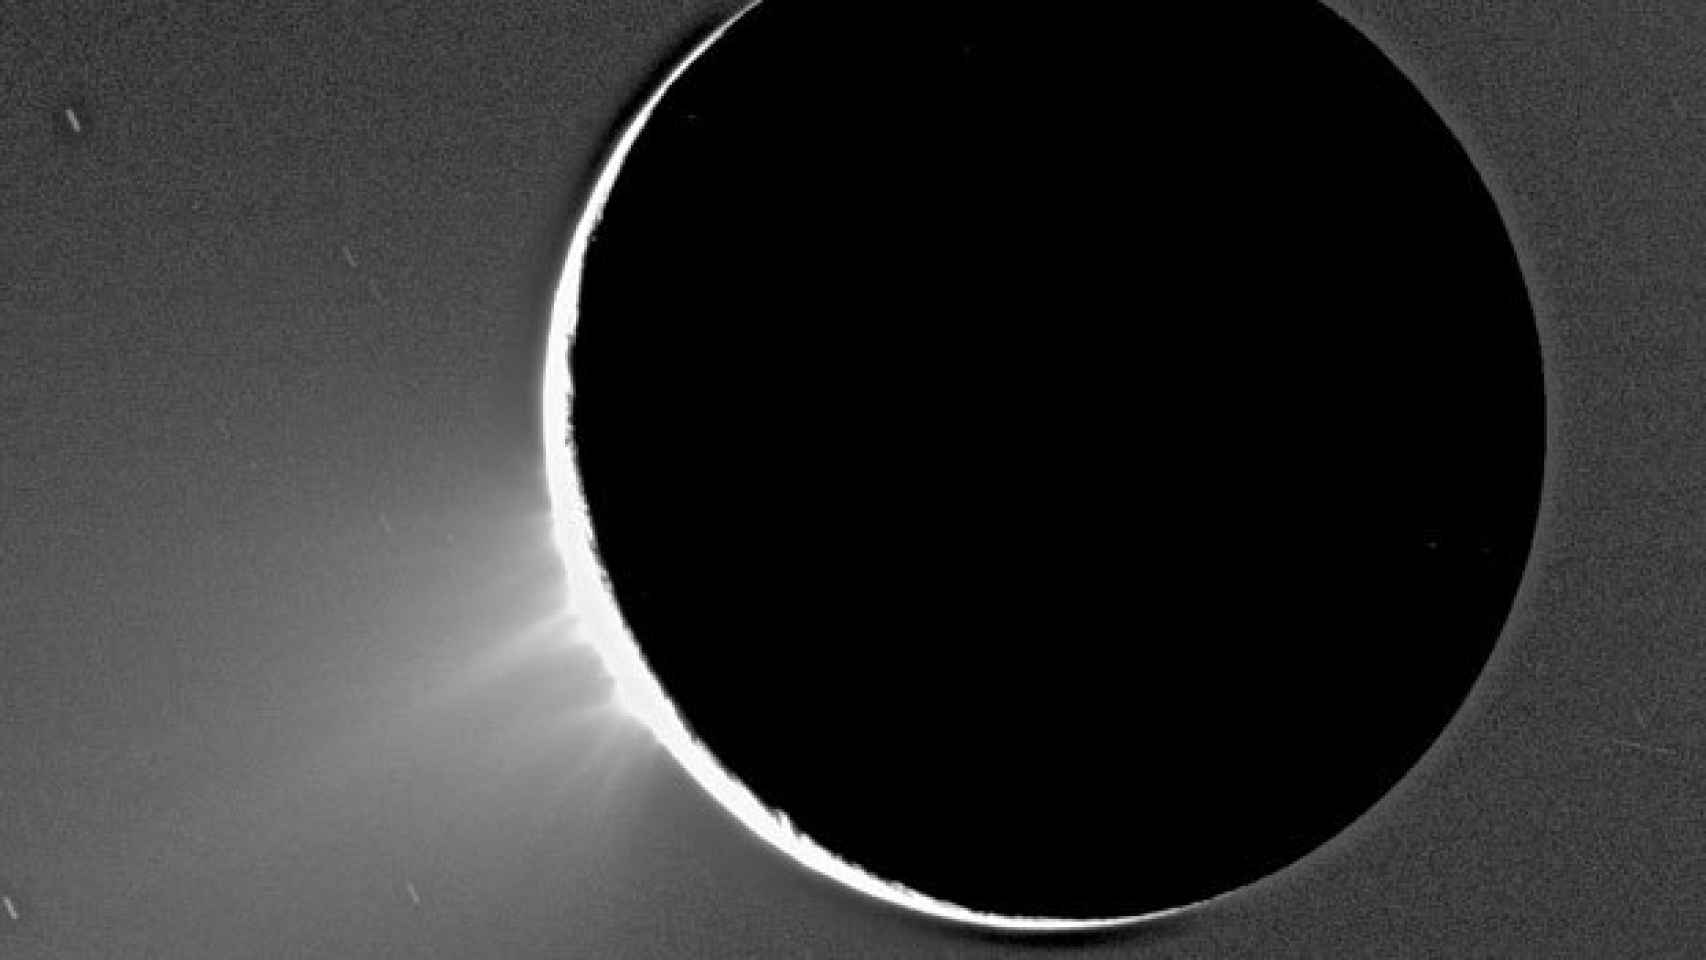 Abajo a la izquierda pueden observarse las eyecciones de gas en Encélado.